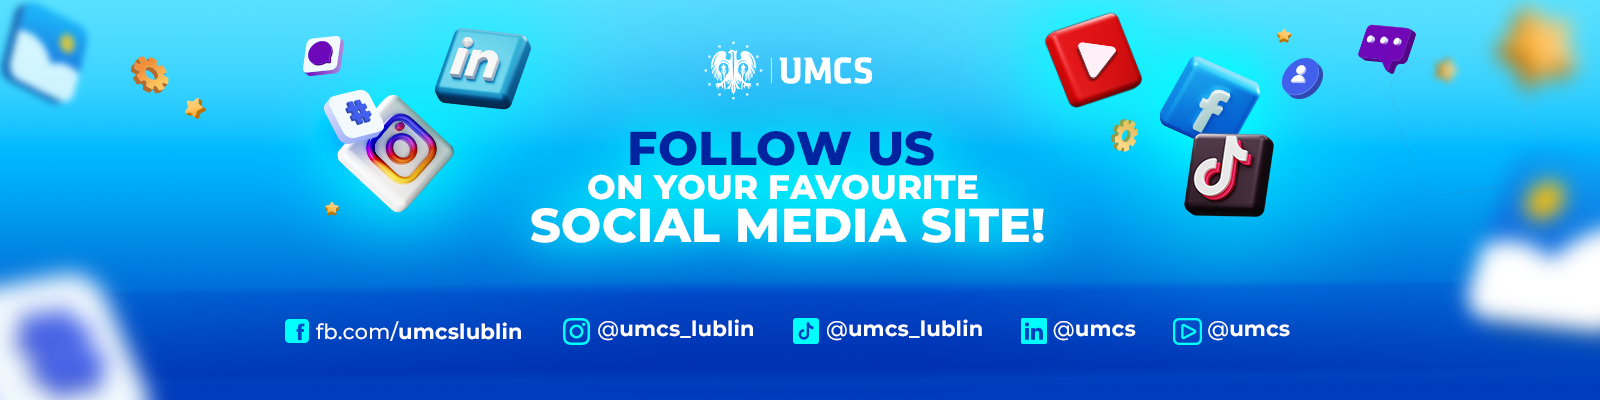 UMCS Social Media